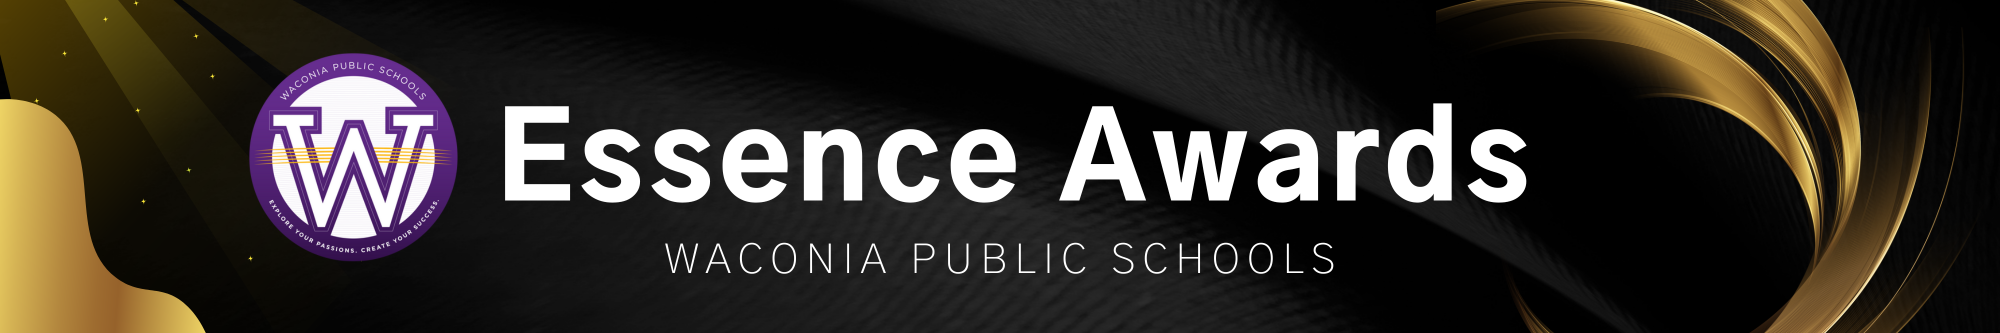 Essence Awards Banner